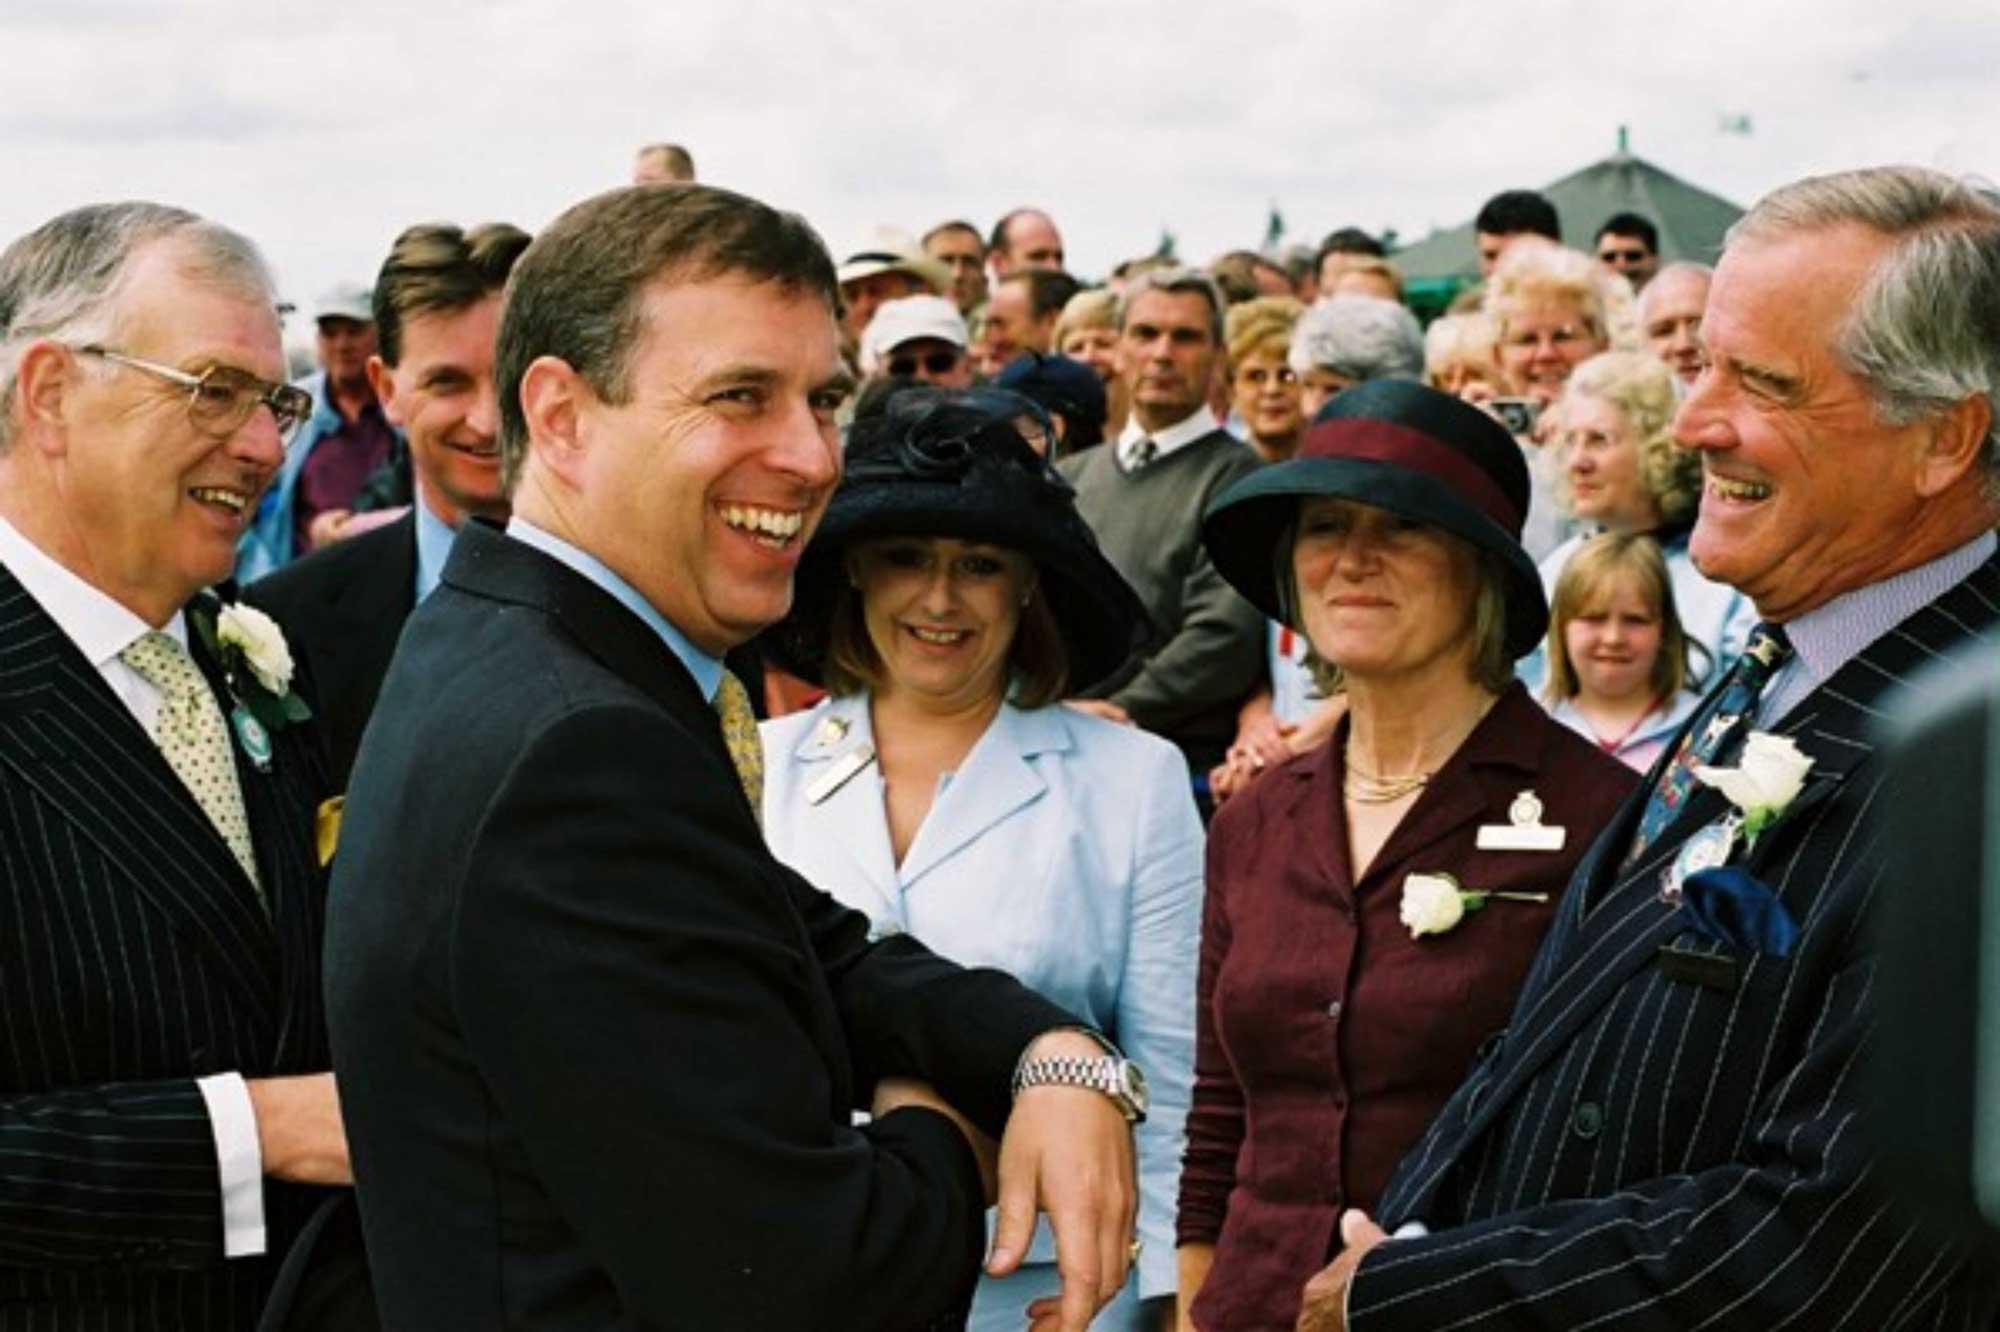 Duke of York visit in 2002